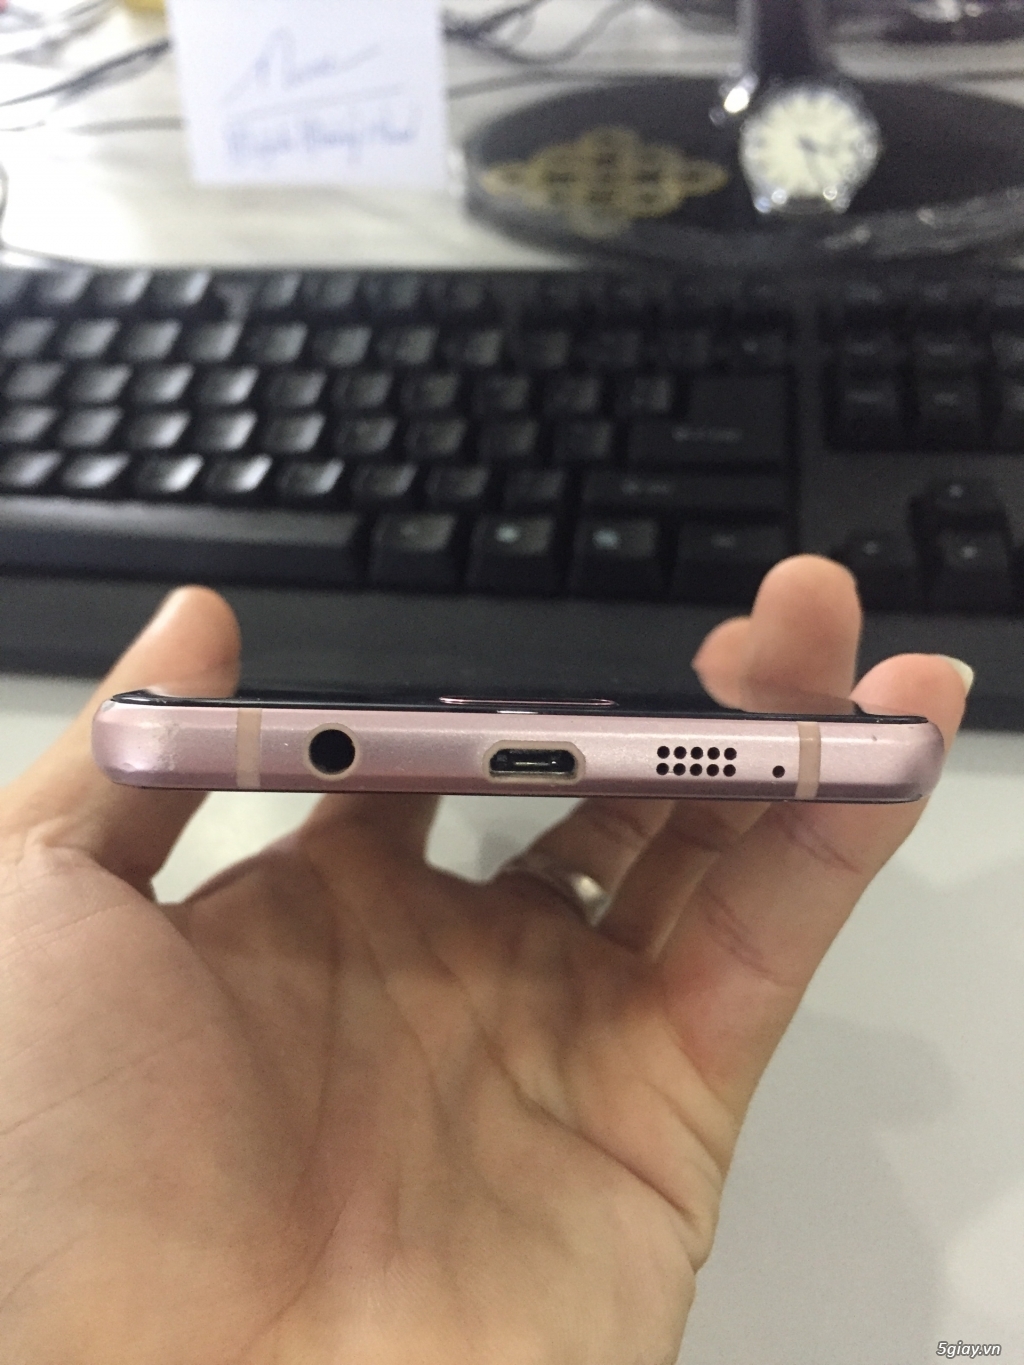 Samsung A7 2016 Rose Gold. 3 tr 8 ra đi nhanh chóng - 4